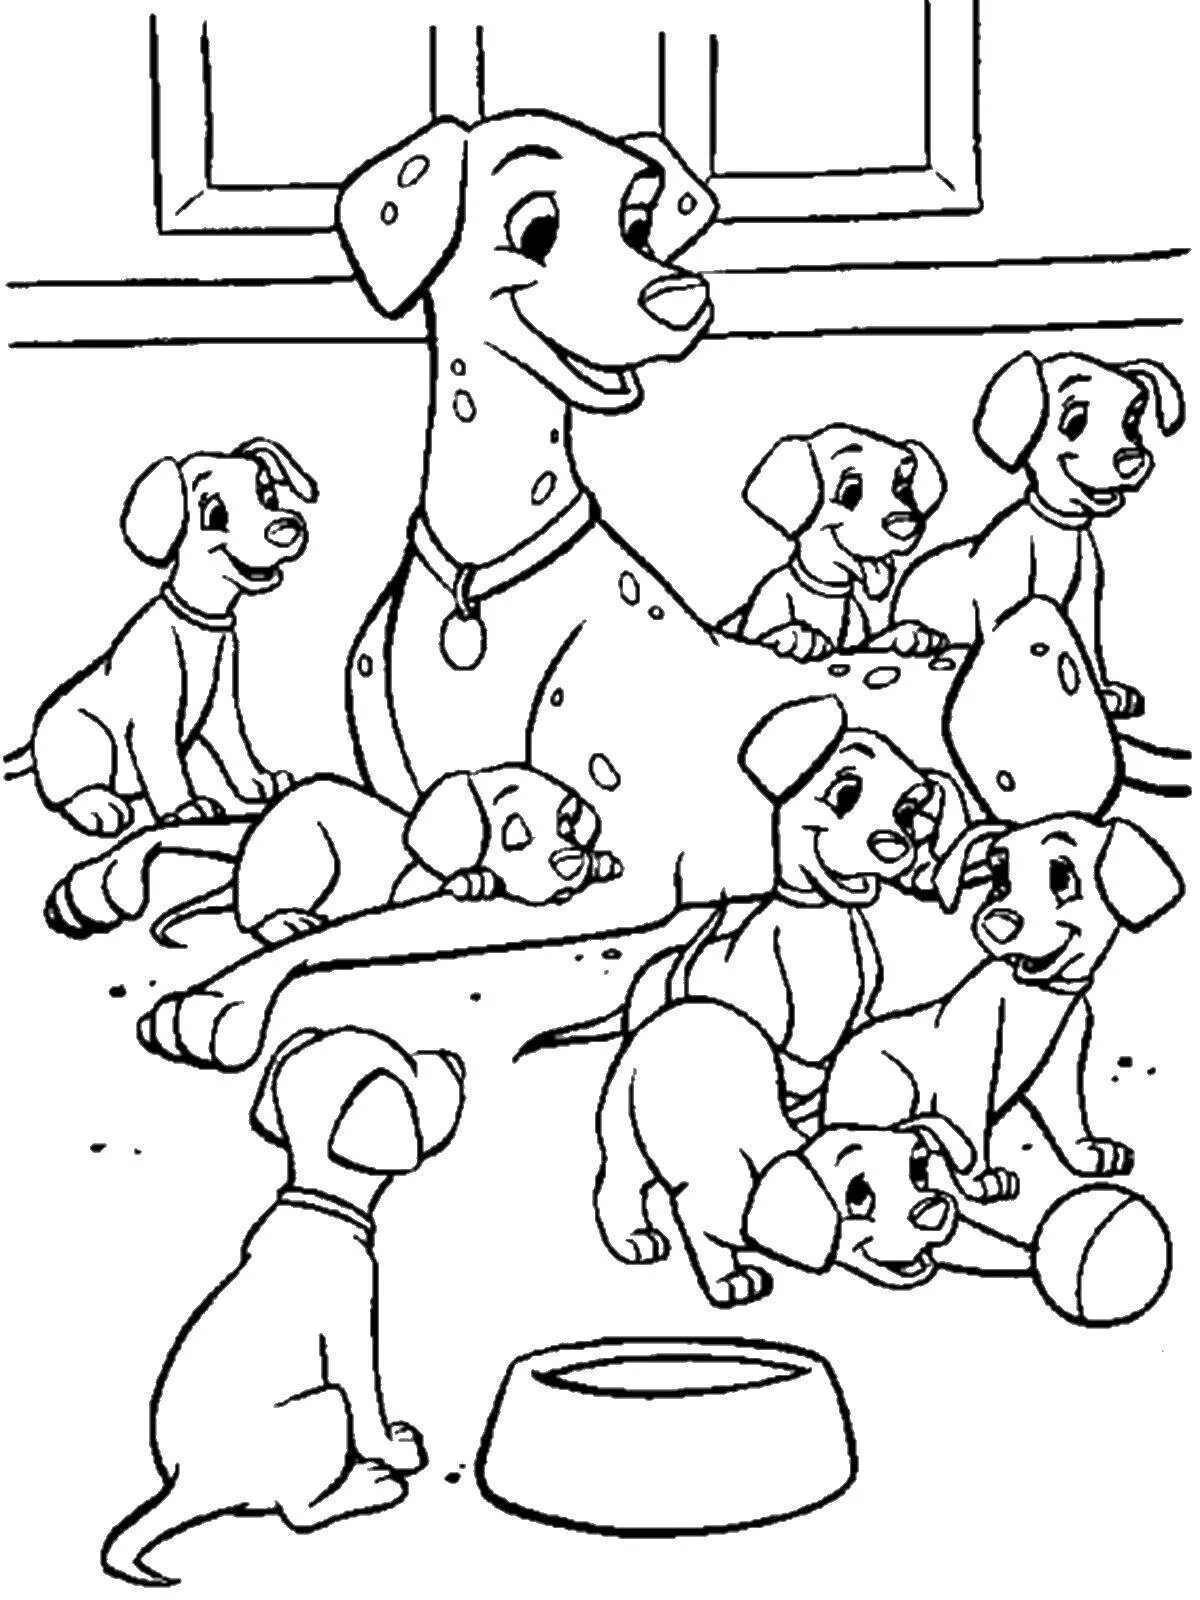 Играбельная семейная раскраска собак